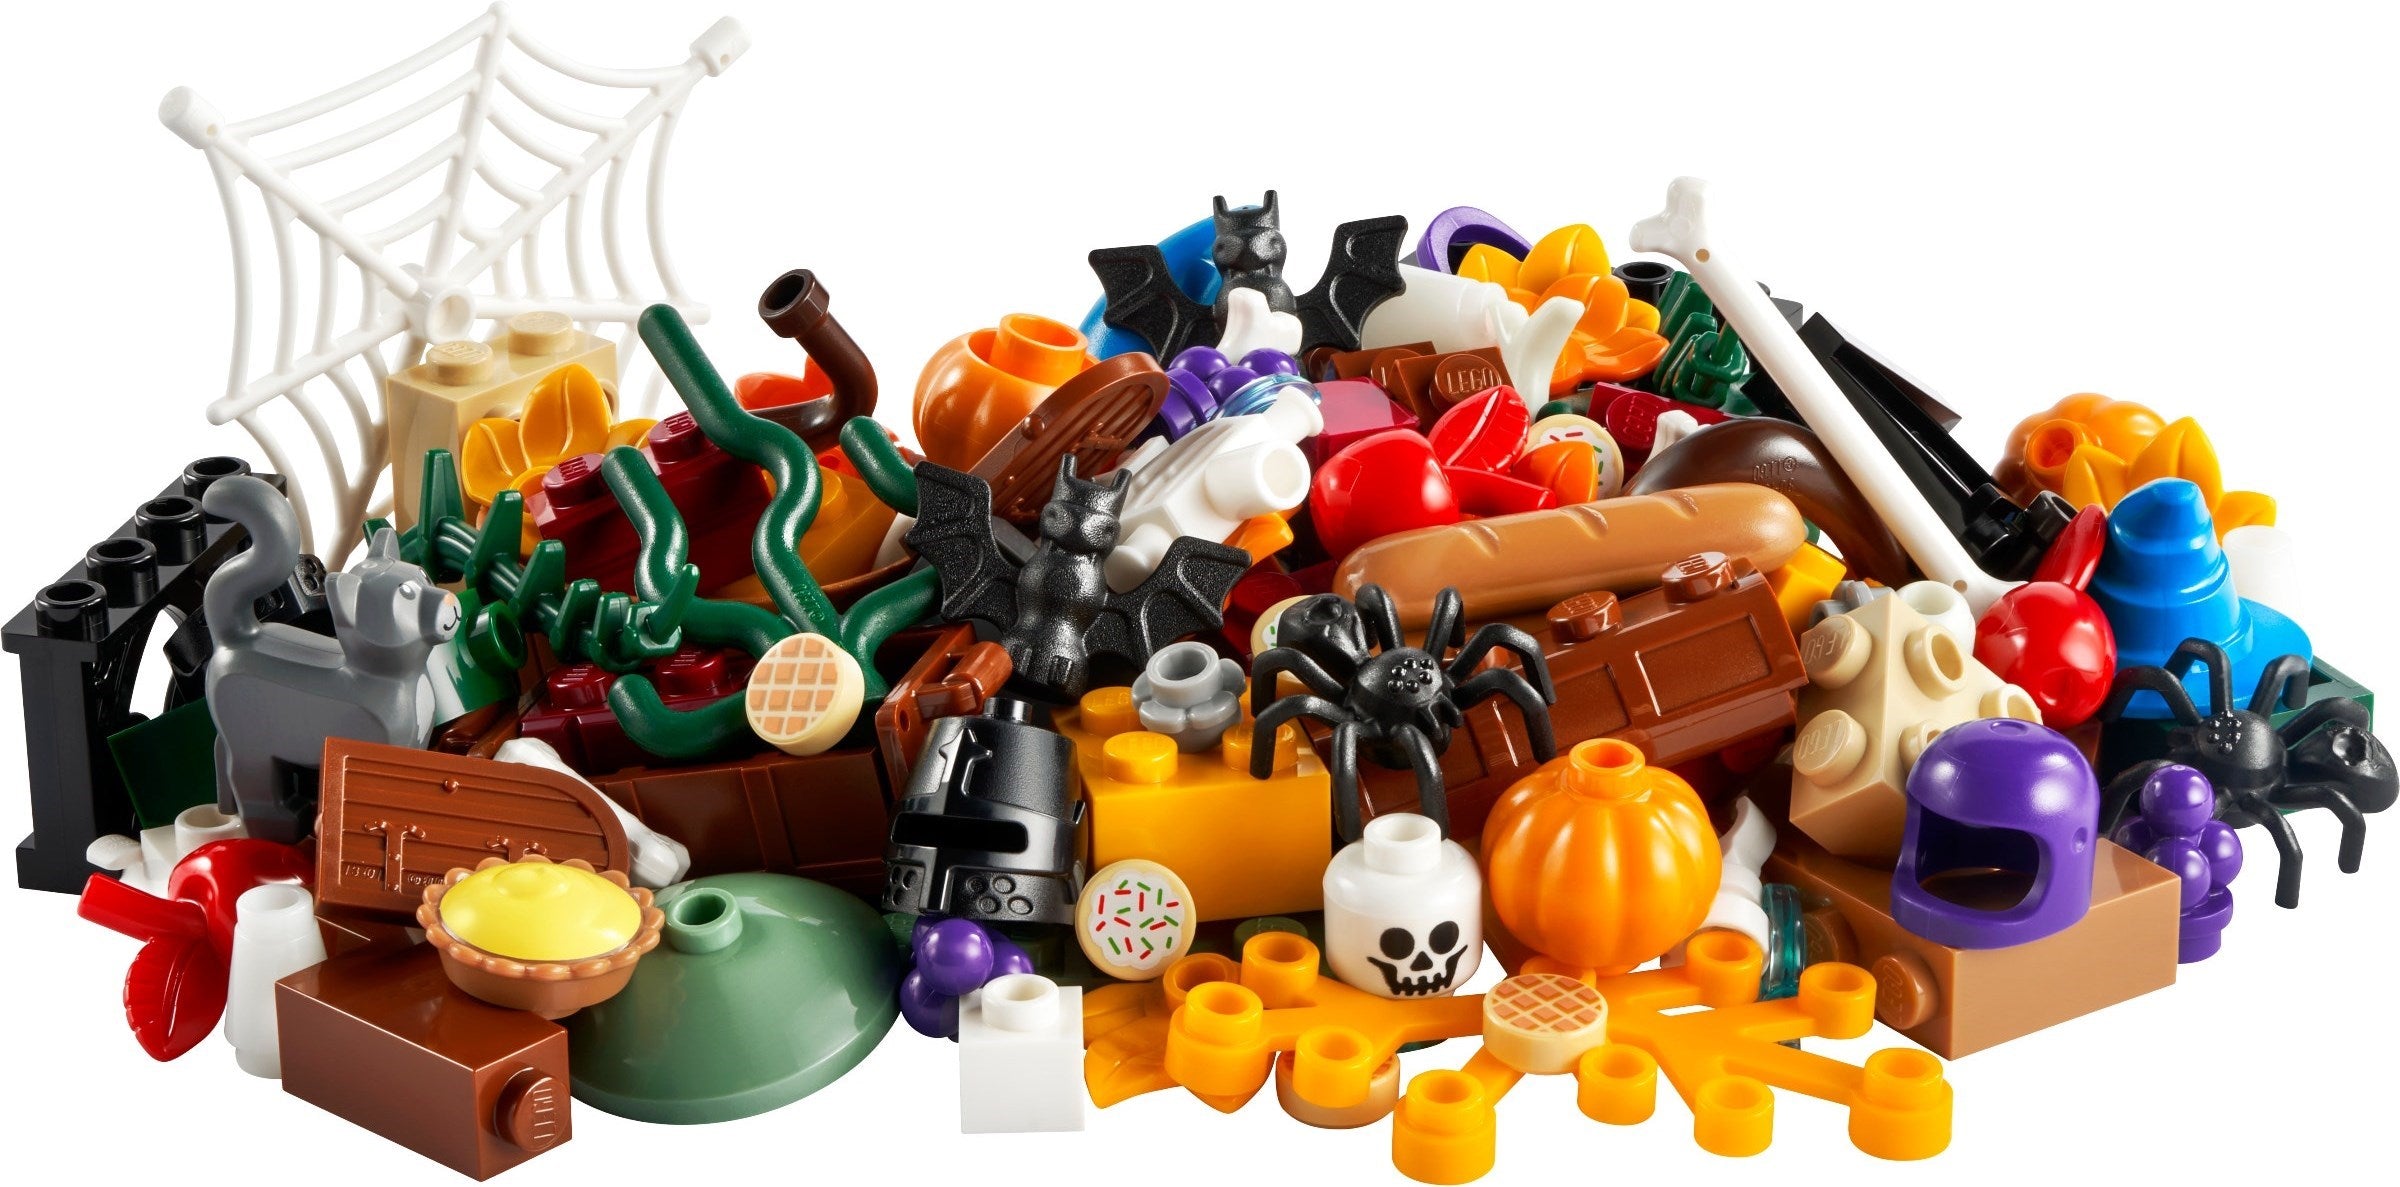 Lego 40608 - Halloween Fun VIP Add On Pack